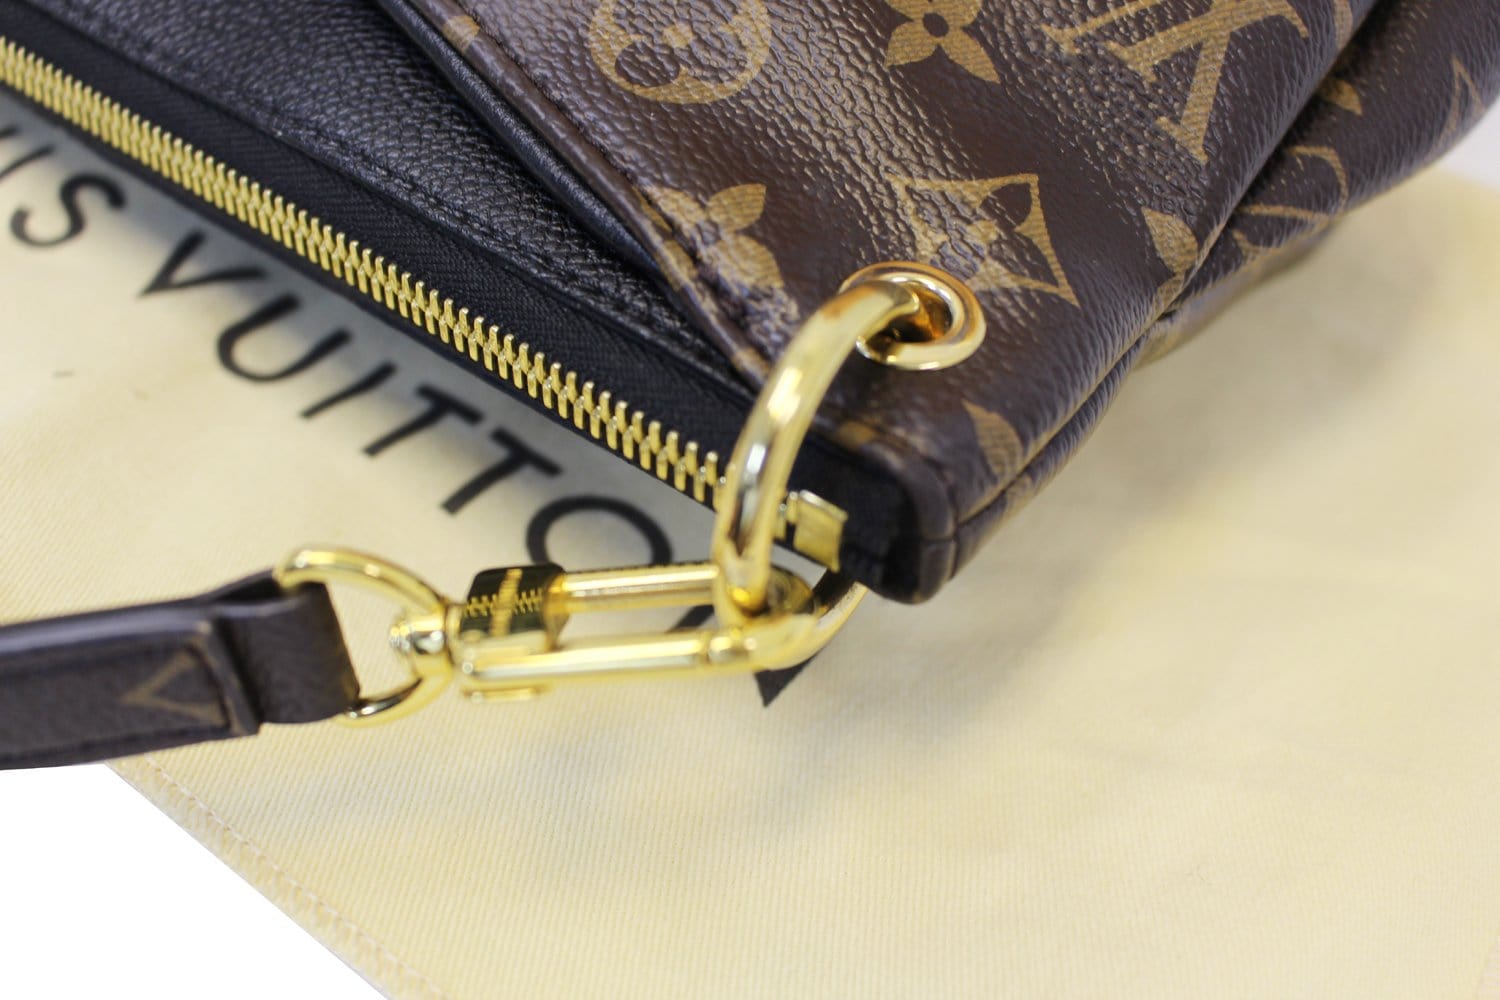 Louis Vuitton Pallas Bb Shoulder Bag